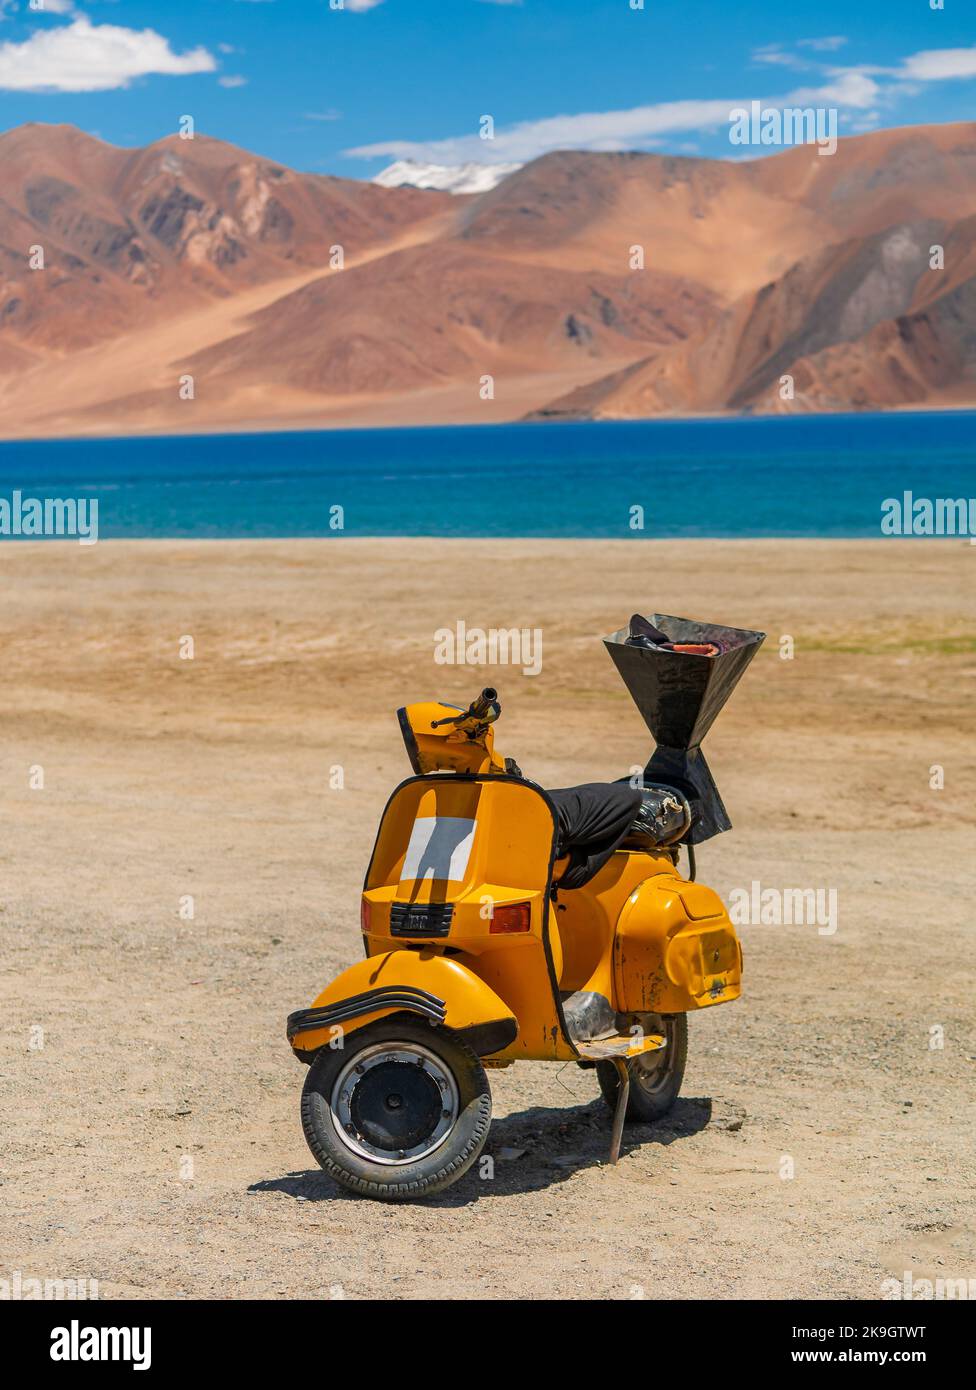 Ladakh, India - 26 giugno 2022 : scooter giallo al lago Pangong, il lago di acqua salata più alto del mondo in una posizione blu in netto contrasto con le aride montagne Foto Stock